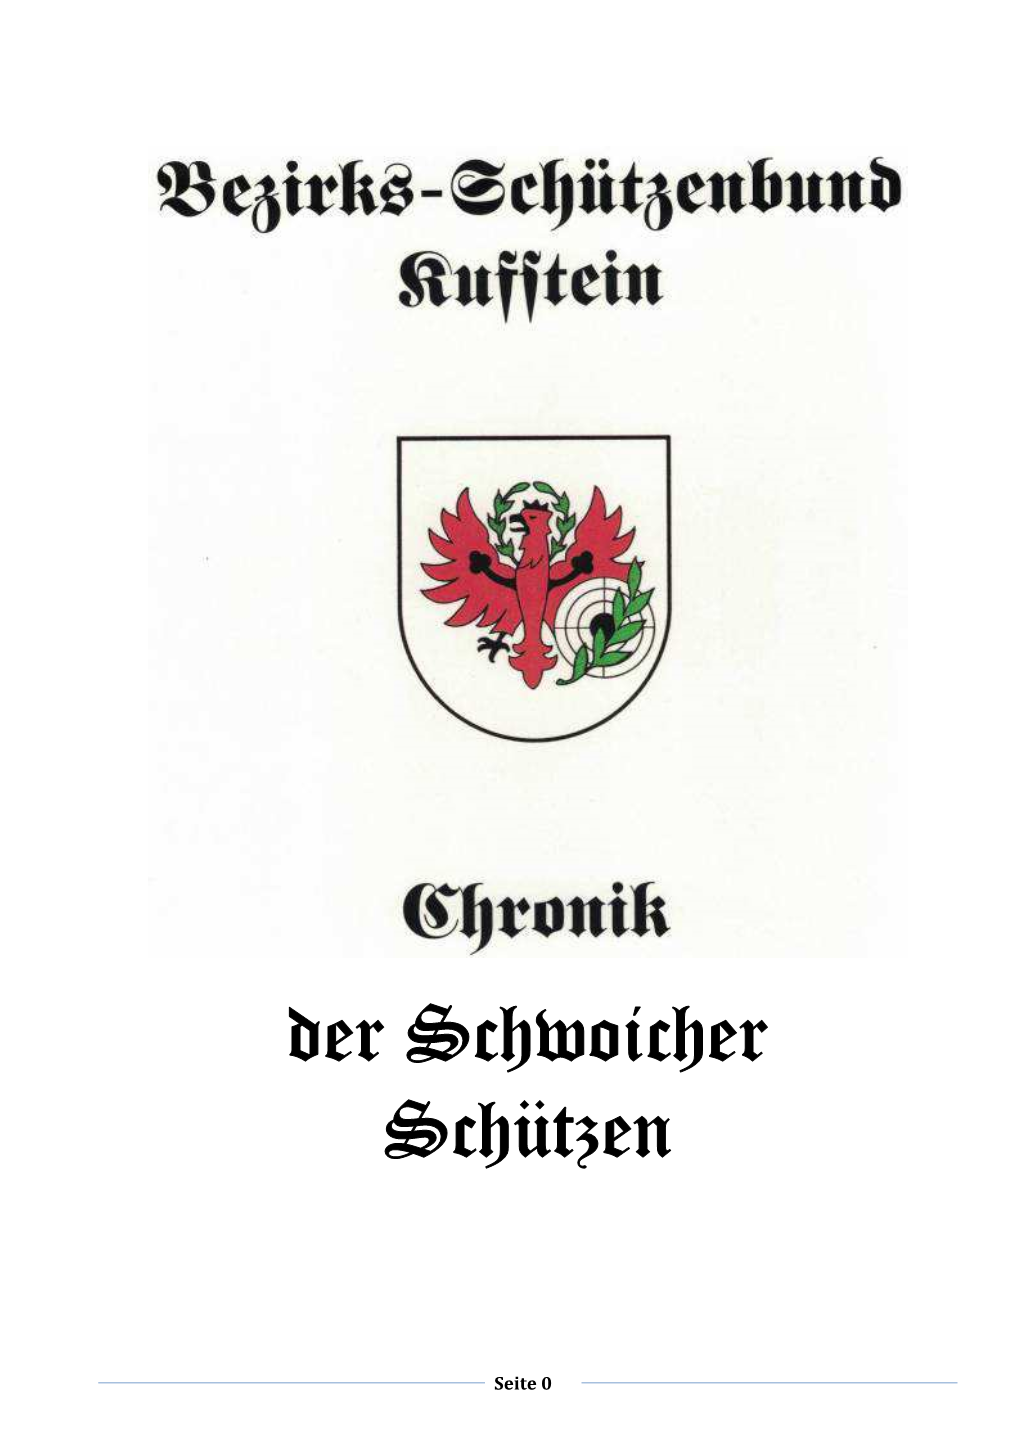 SG Schwoich Stand 1991